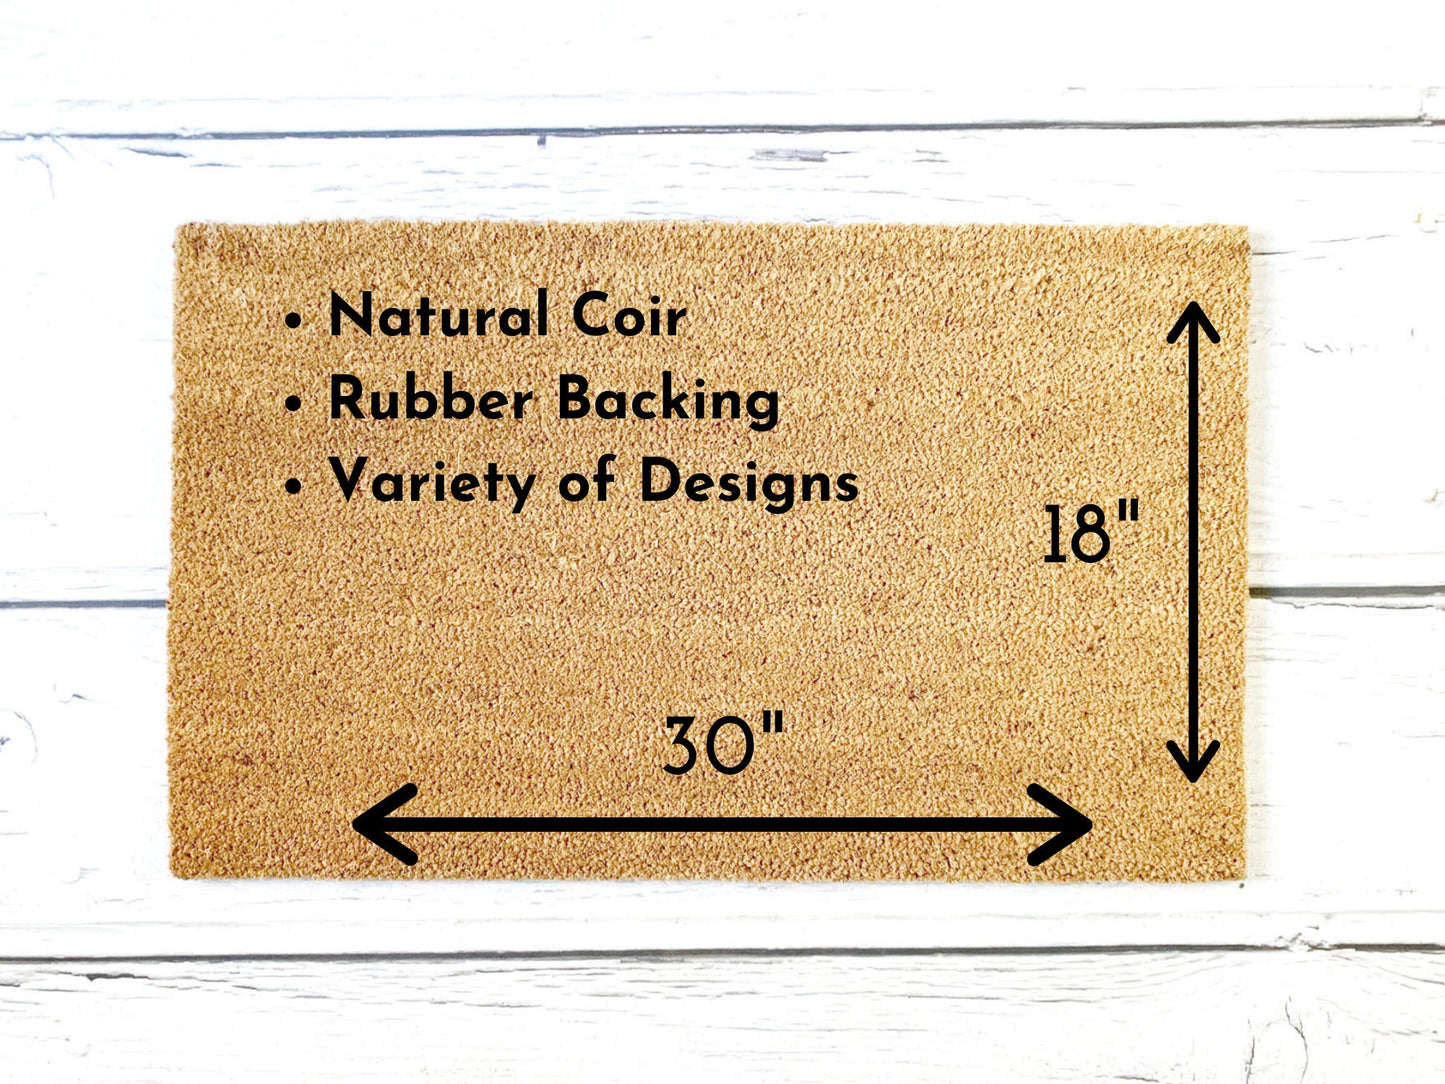 Nice Package Doormat | Custom Painted Doormat | Funny Doormat | Closing Gift | Welcome Doormat | Front Door Mat | Home Decor